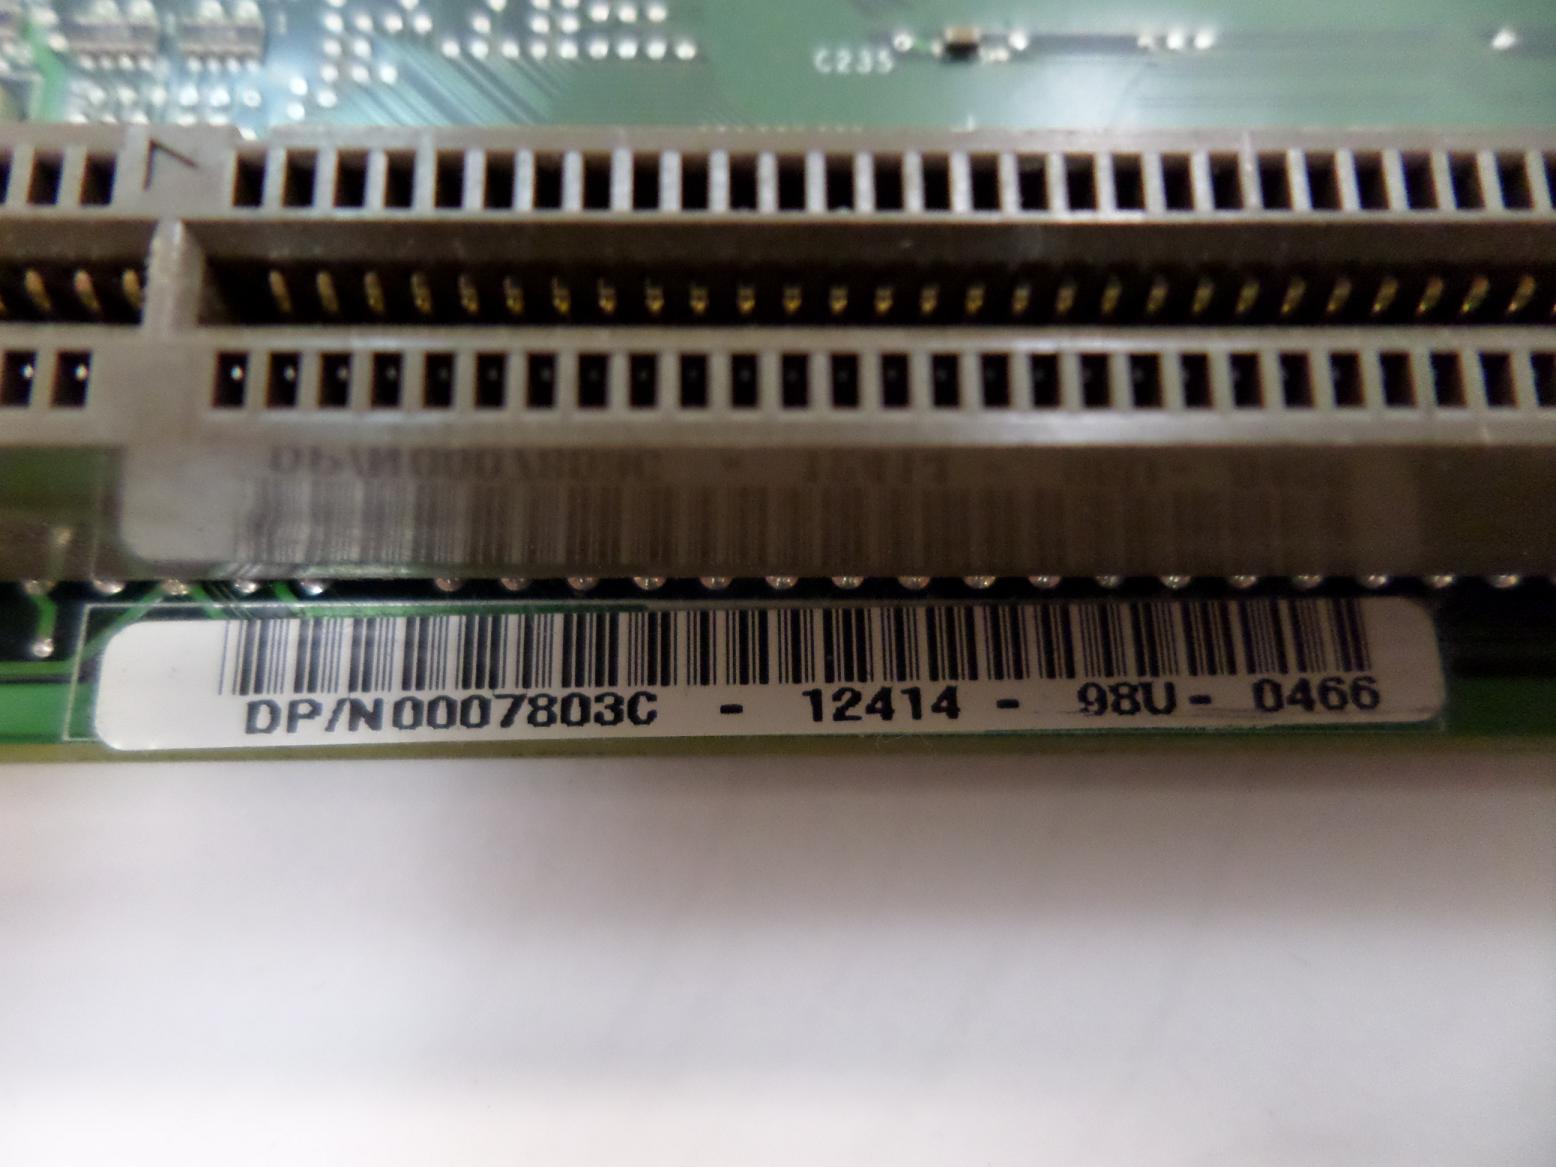 PR24495_0007803C_DEL 0007803C System Board for Optiplex GX1 - Image3